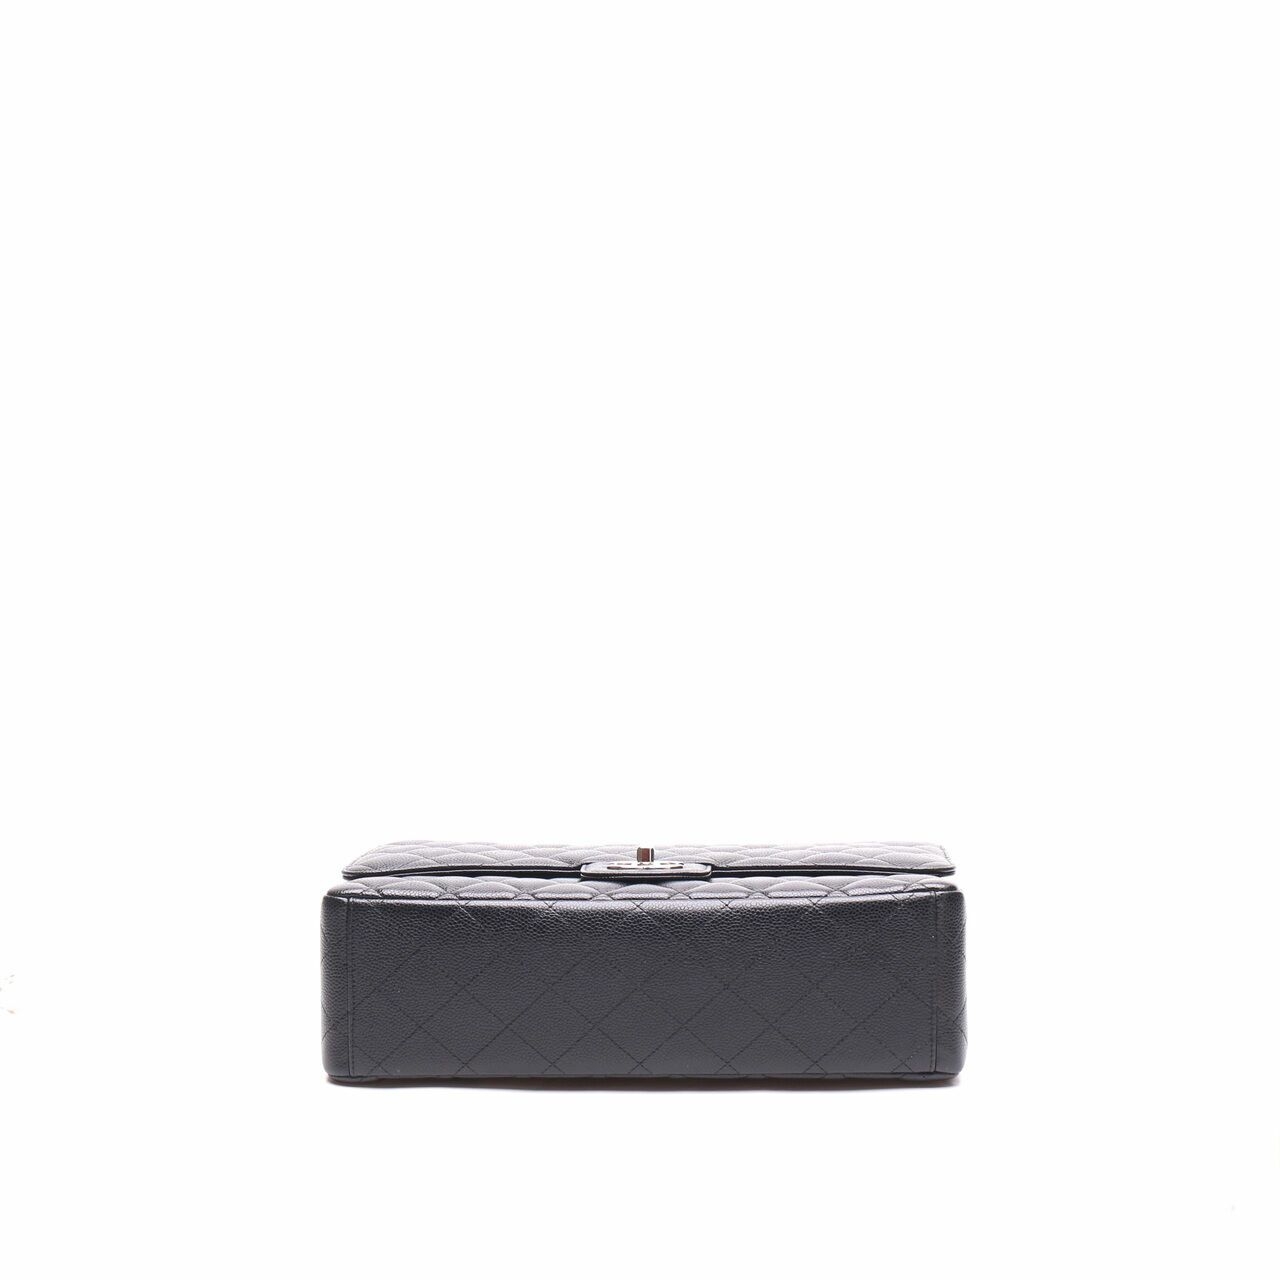 Chanel Classic Caviar Black Shoulder Bag